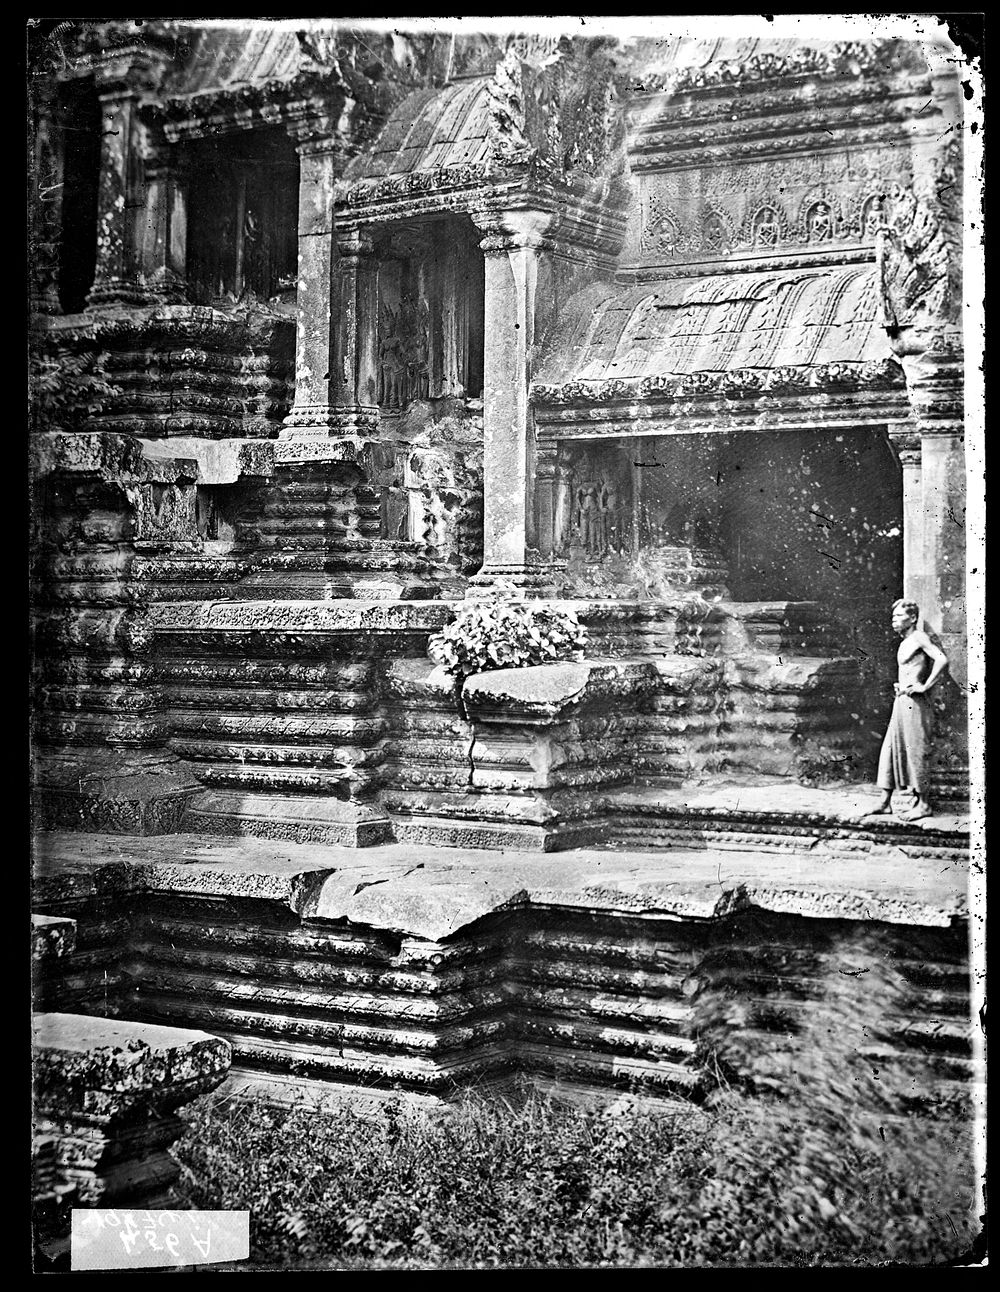 Nakhon Thom [Angkor Wat], Cambodia. Photograph by John Thomson, 1866.